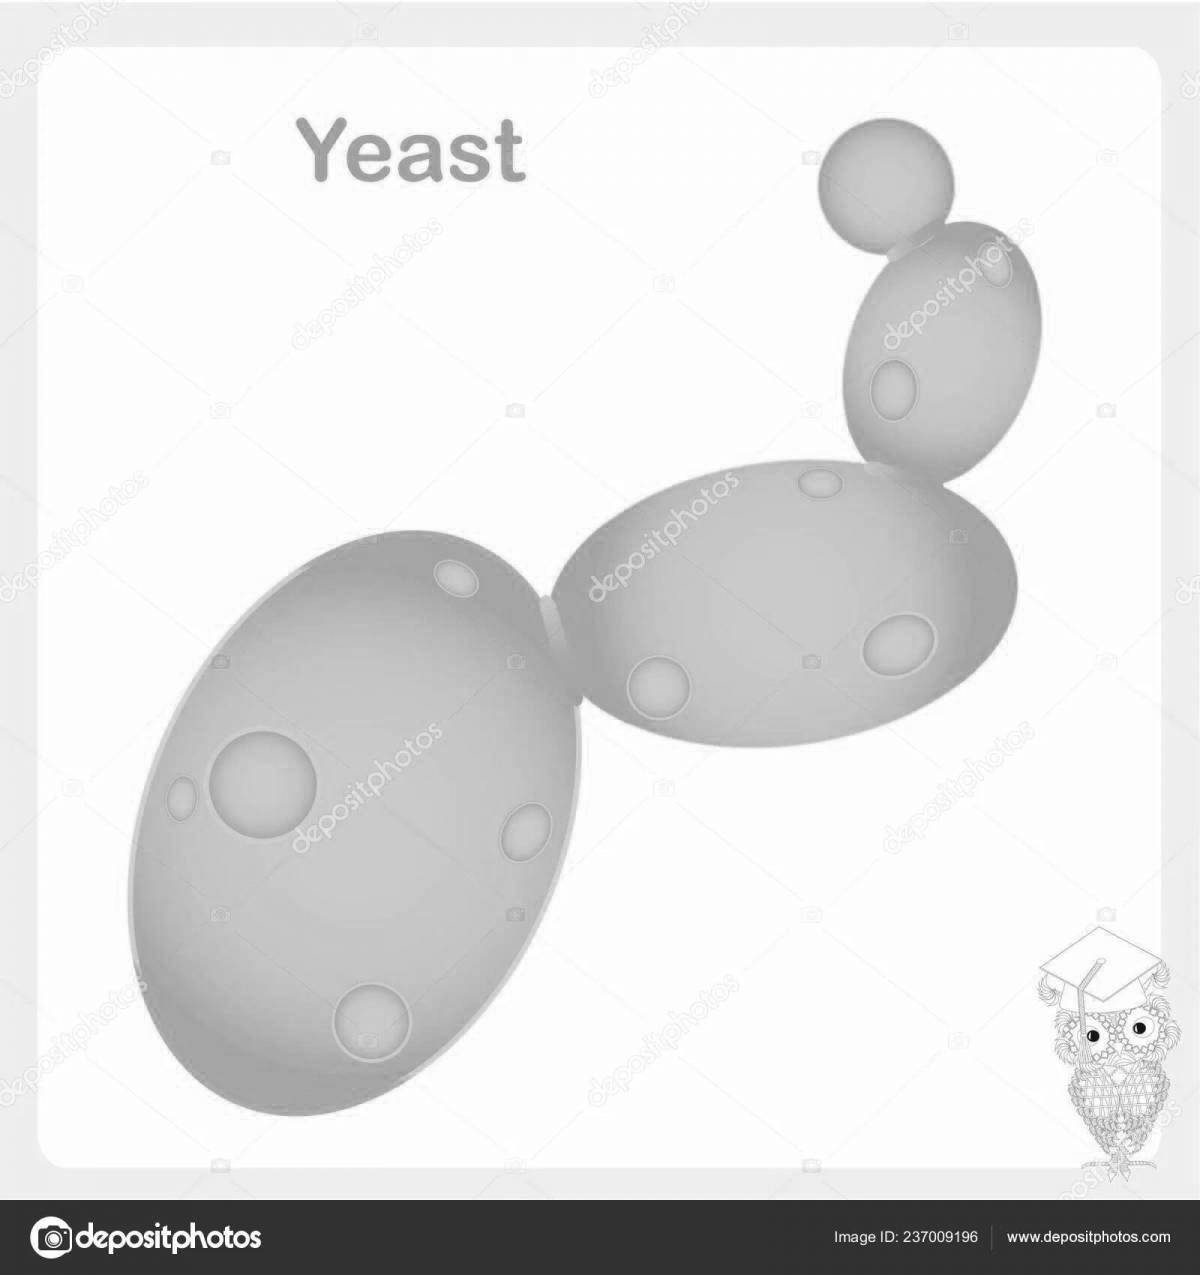 Fun yeast coloring